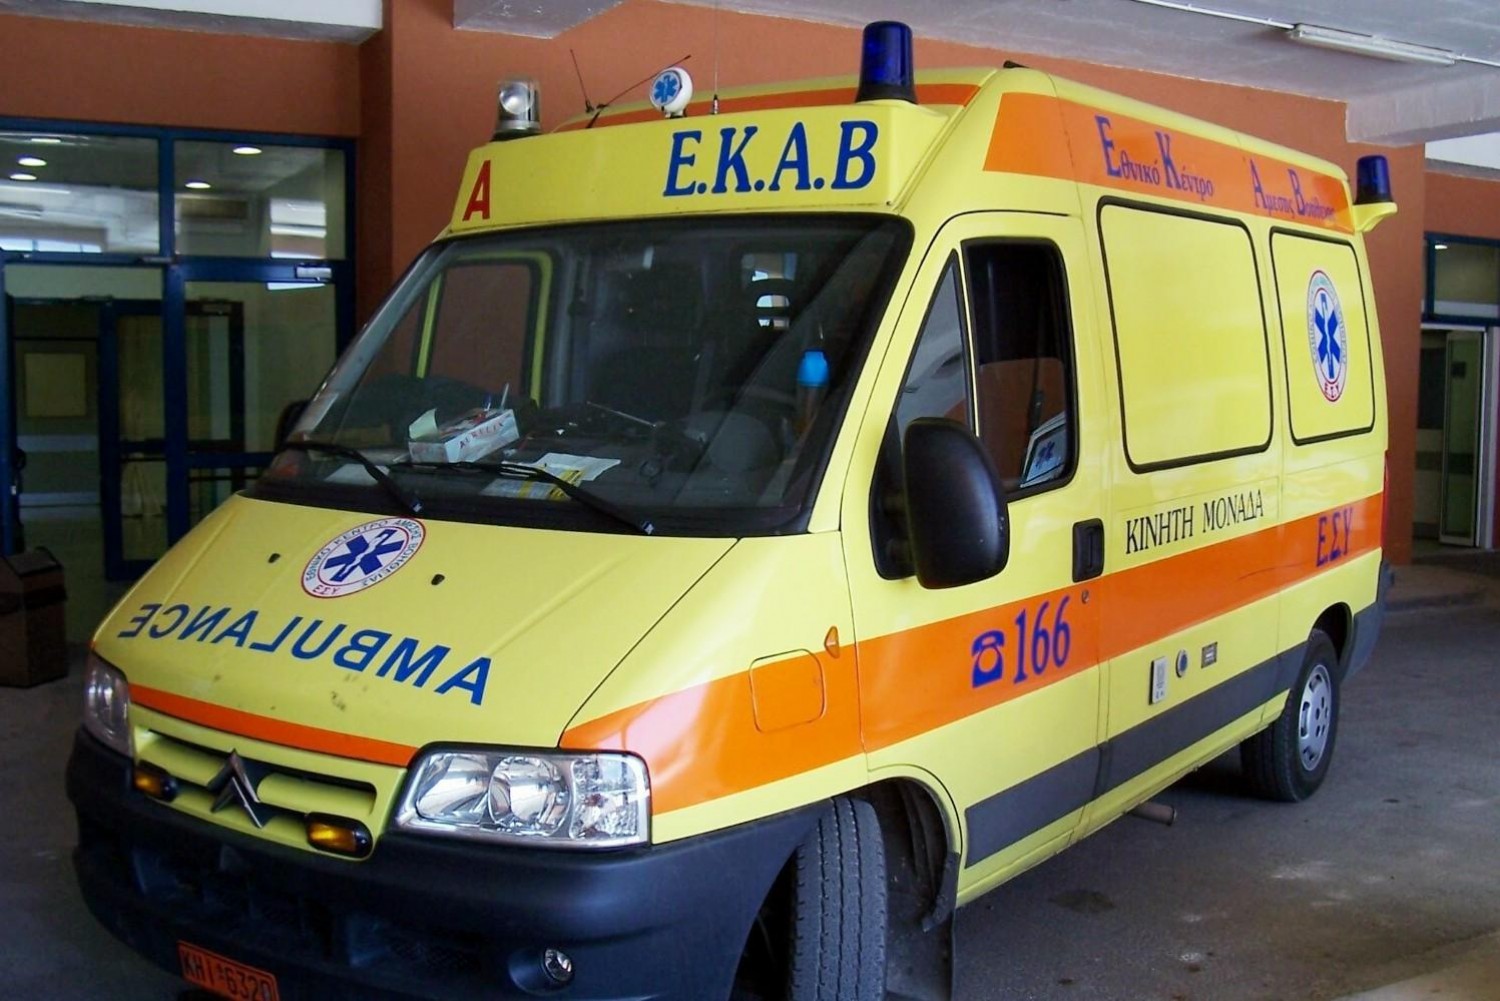 Σοκ: Ασθενής μαχαίρωσε νοσηλεύτρια στον Ερυθρό Σταυρό